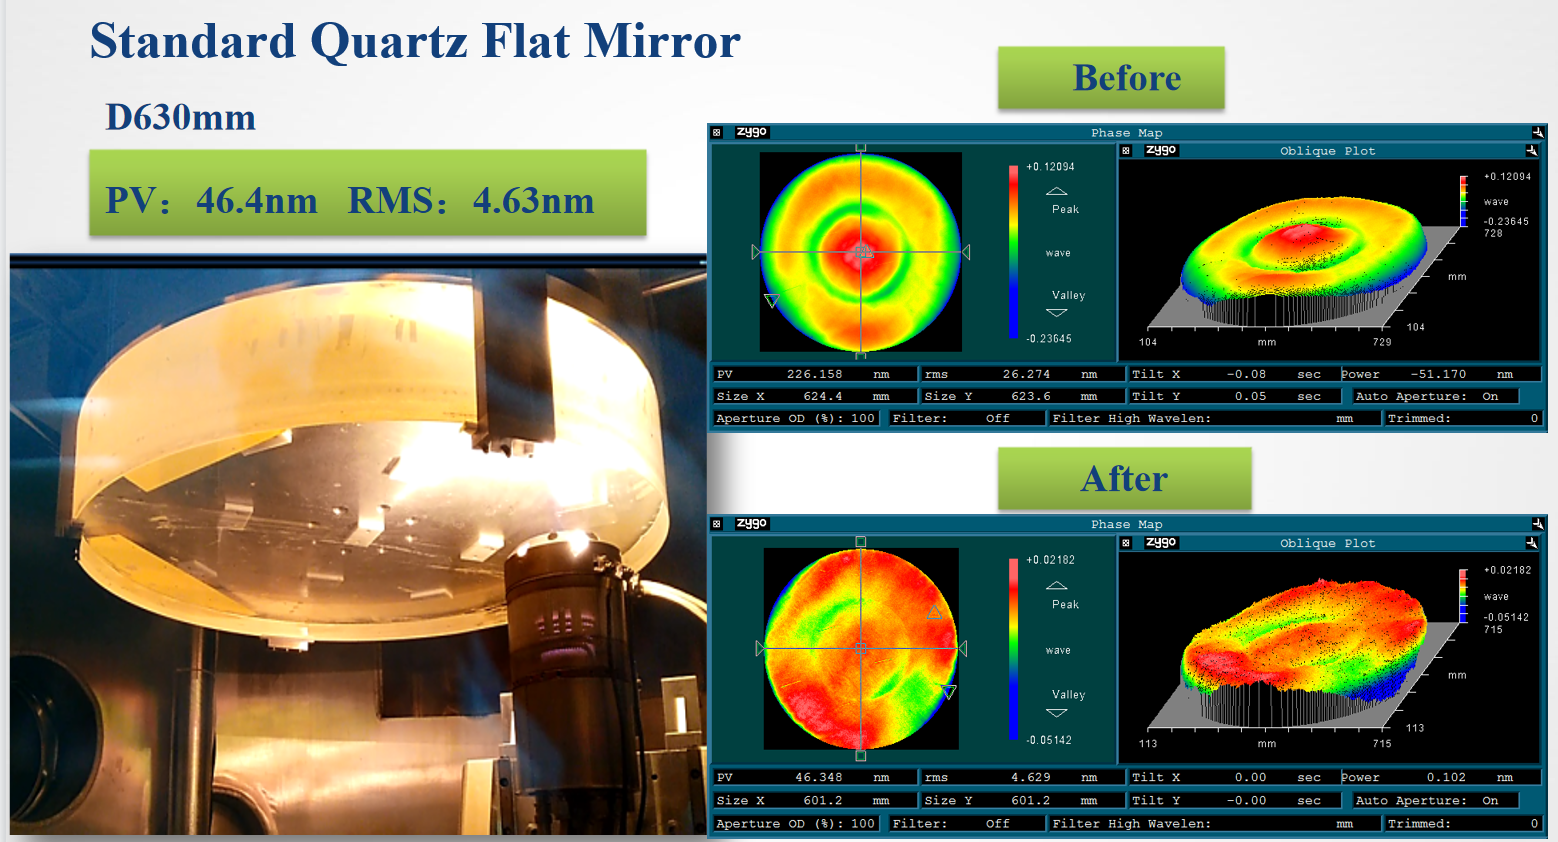 Standard Quartz Flat Mirror